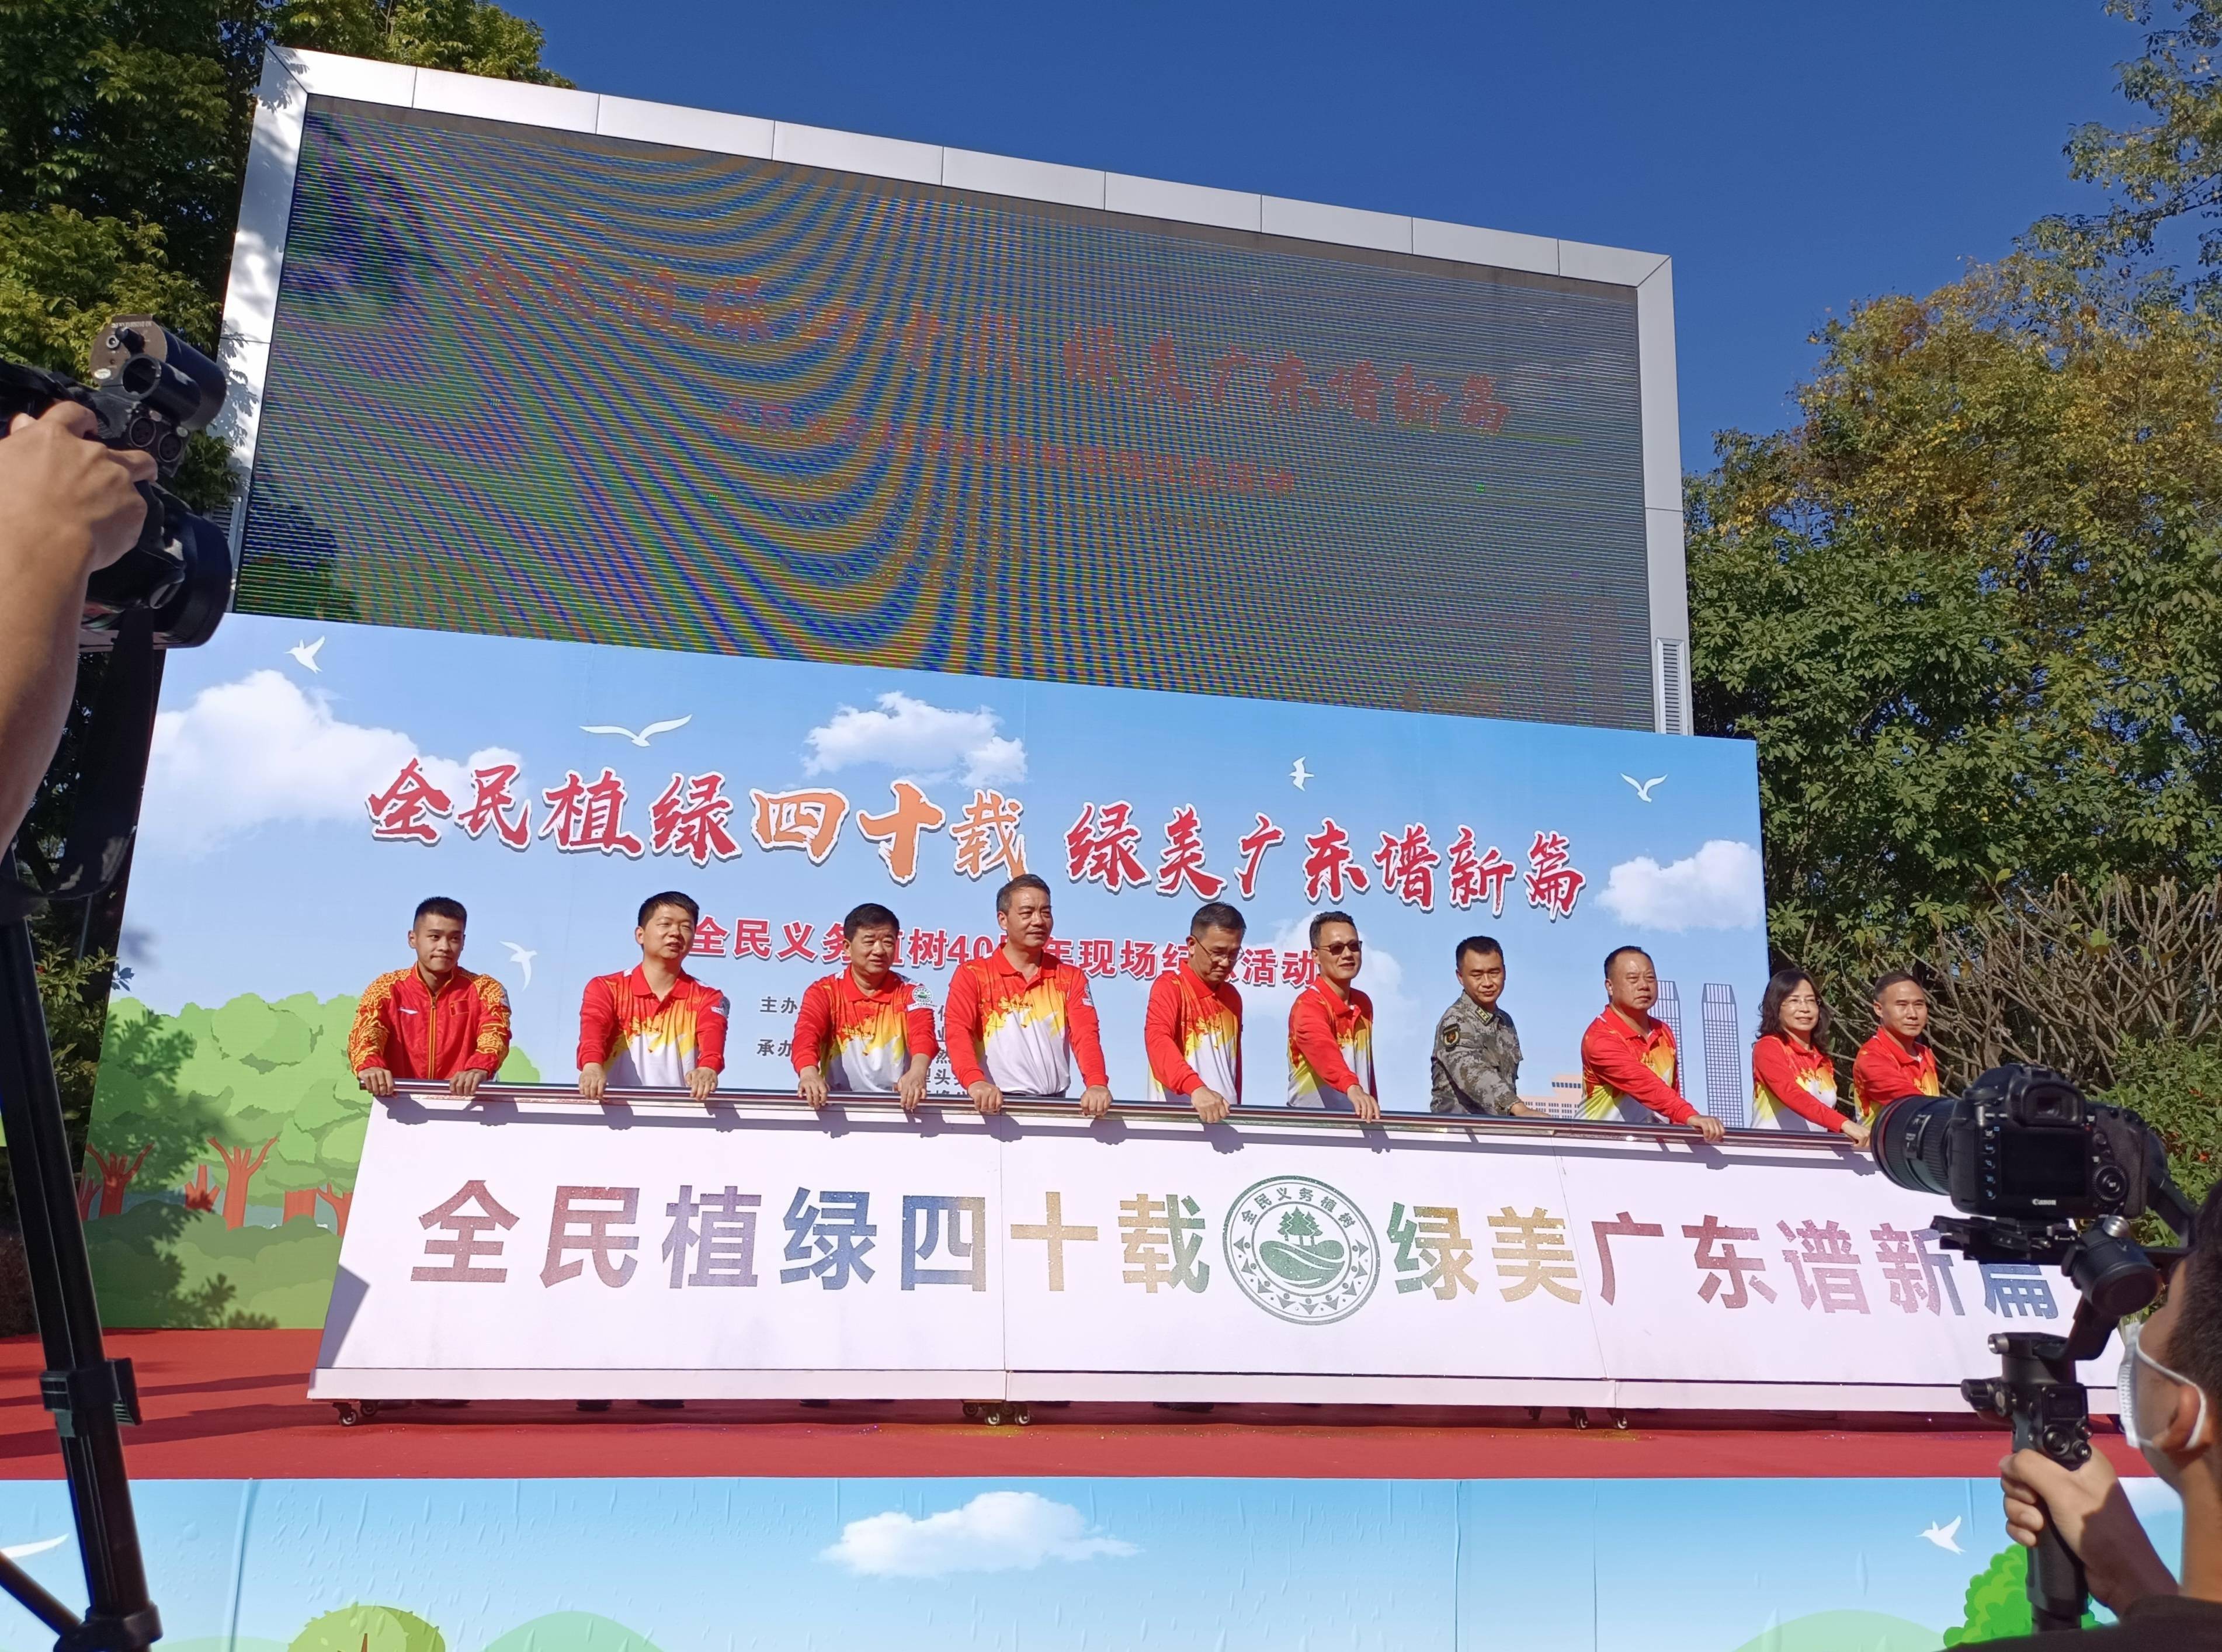 在中山市蒂峰公园举办的广东全民义务植树40周年纪念林植树活动上